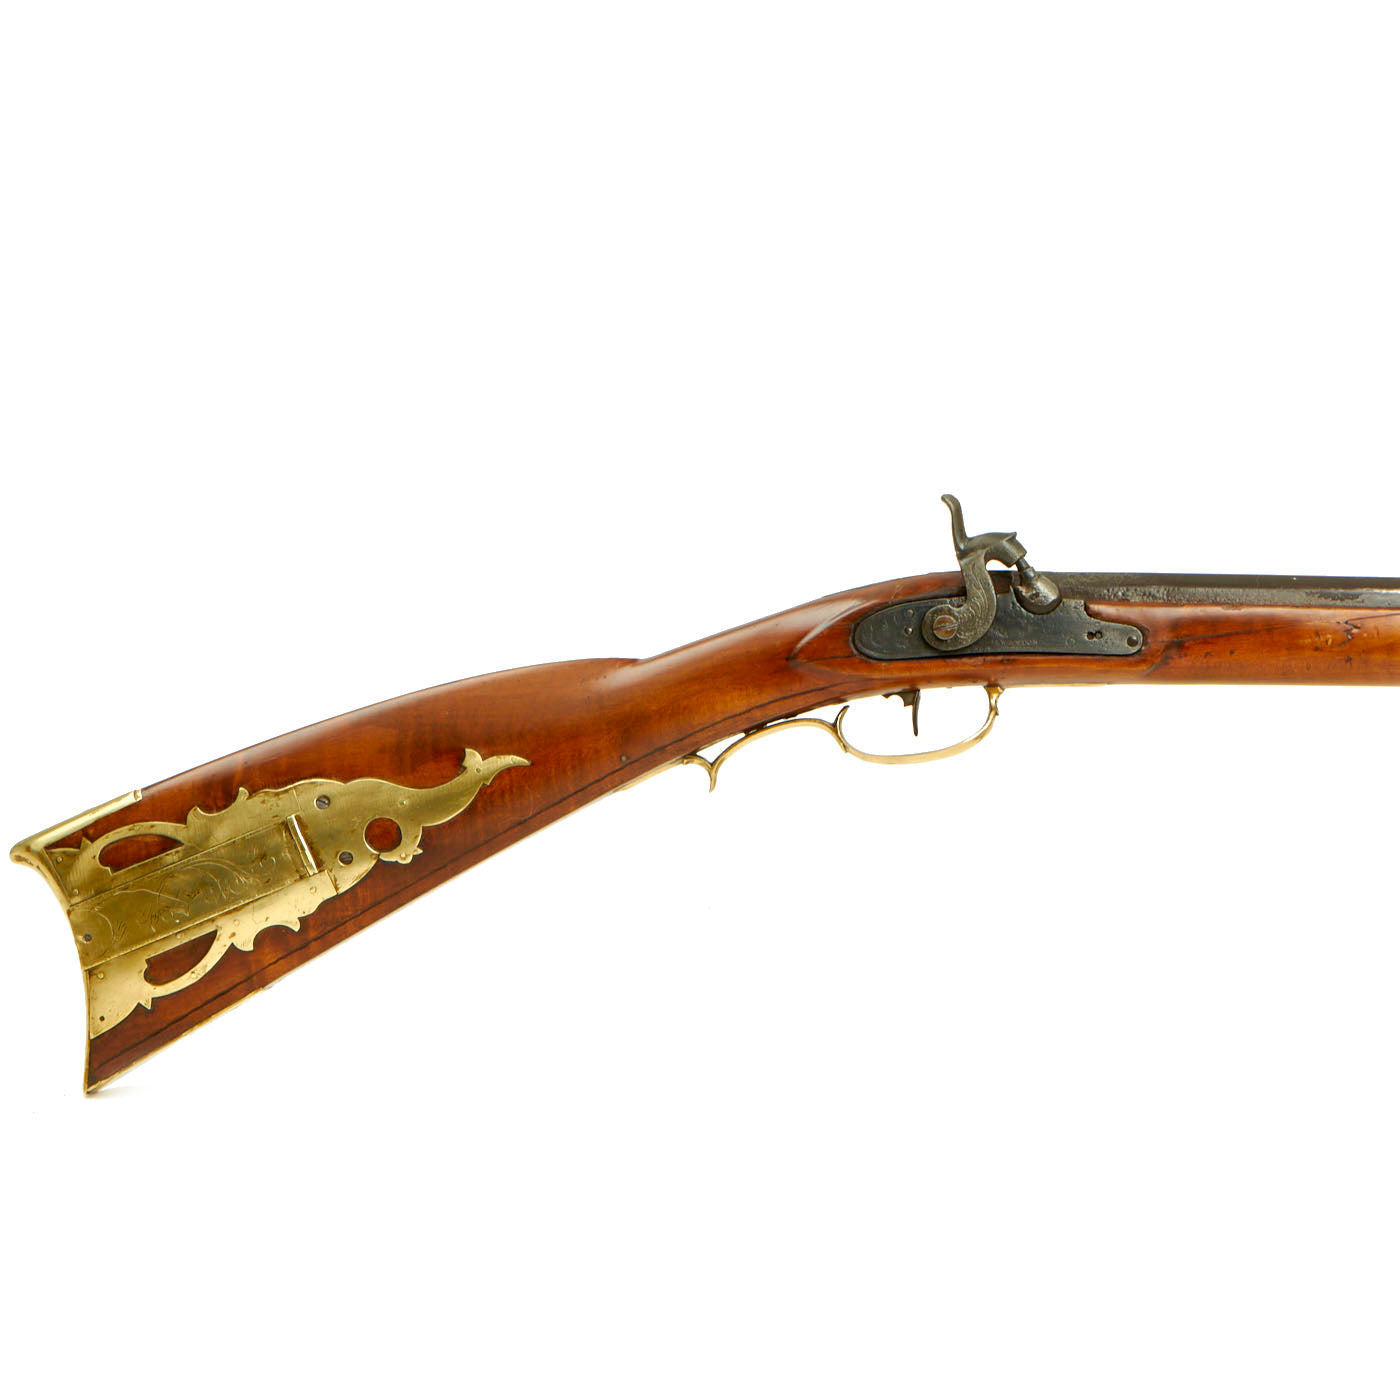 An 1820-1830 Pennsylvania (Kentucky) rifle?